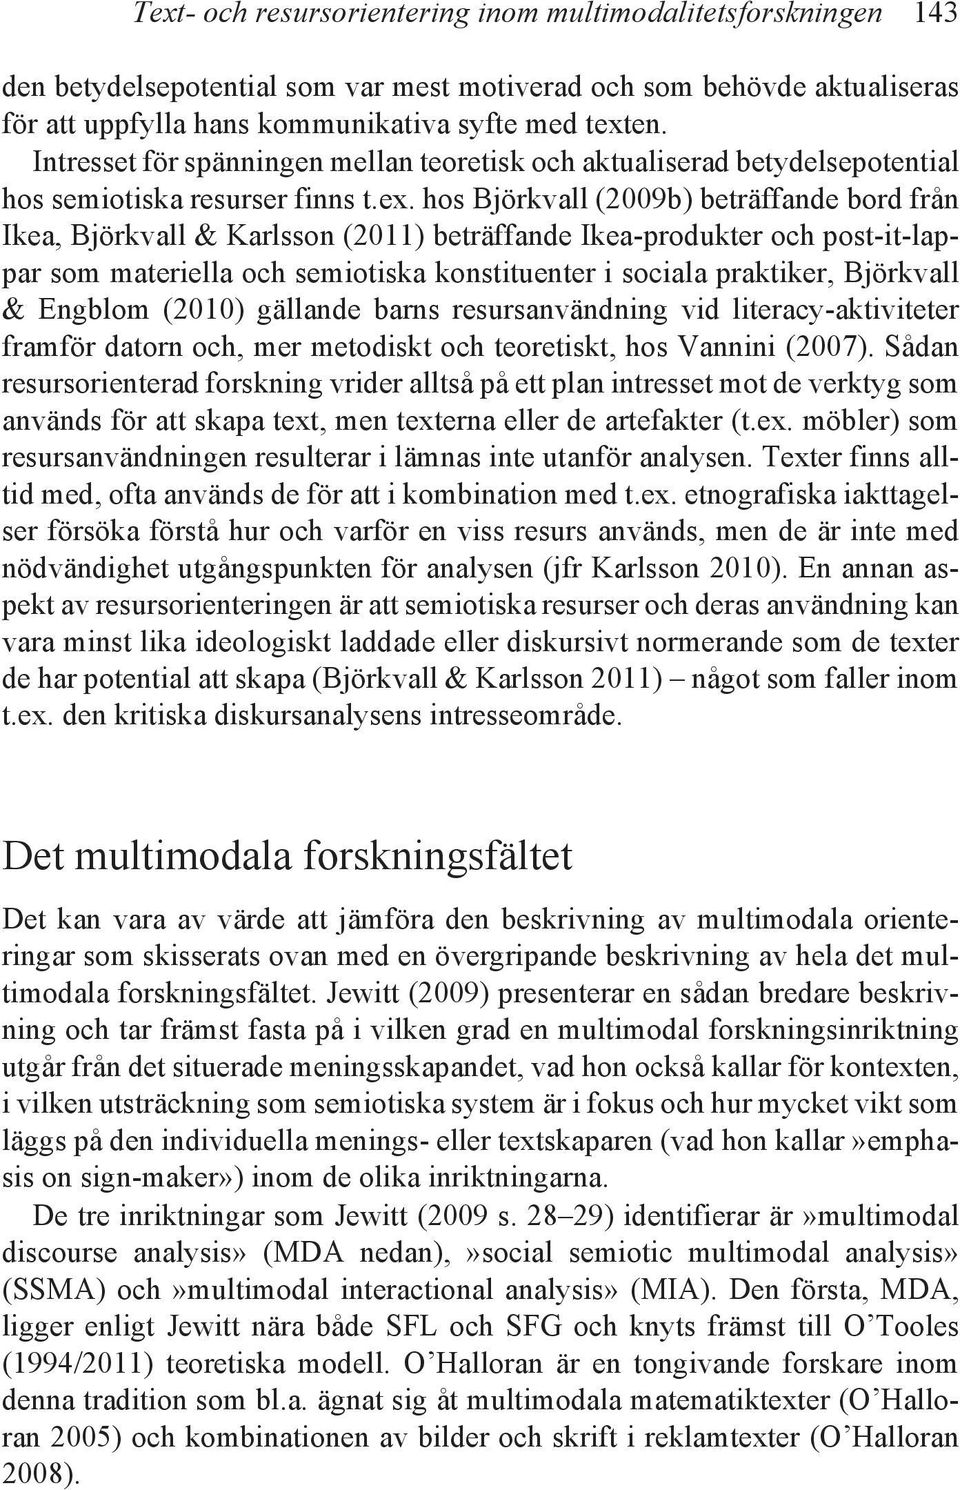 hos Björkvall (2009b) beträffande bord från Ikea, Björkvall & Karlsson (2011) beträffande Ikea-produkter och post-it-lappar som materiella och semiotiska konstituenter i sociala praktiker, Björkvall